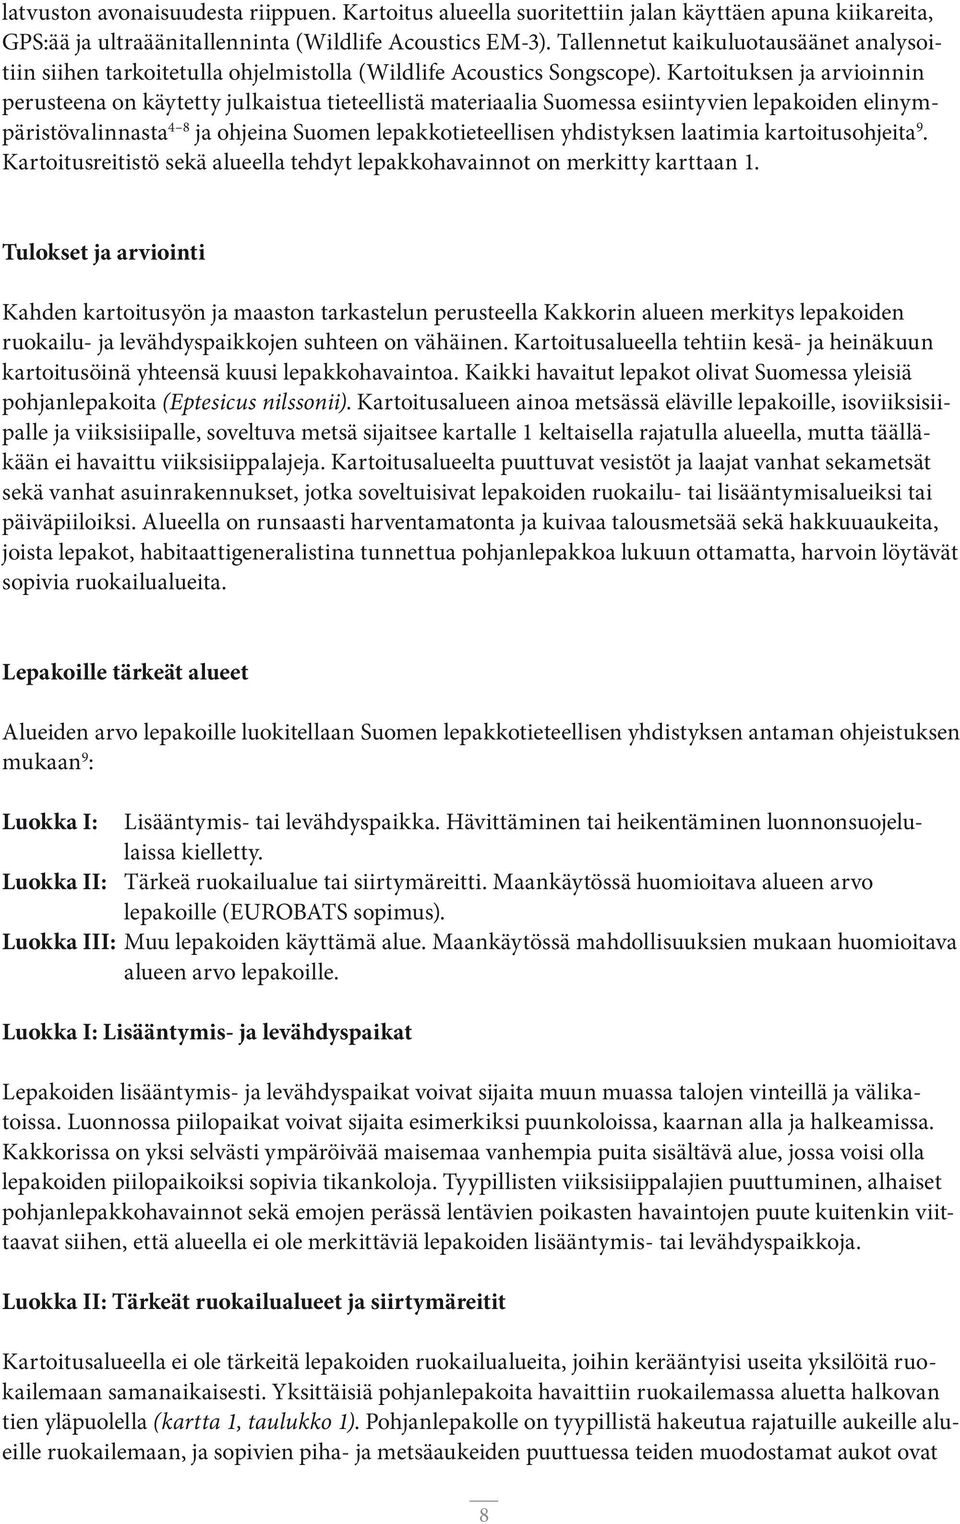 Kartoituksen ja arvioinnin perusteena on käytetty julkaistua tieteellistä materiaalia Suomessa esiintyvien lepakoiden elinympäristövalinnasta 4 8 ja ohjeina Suomen lepakkotieteellisen yhdistyksen